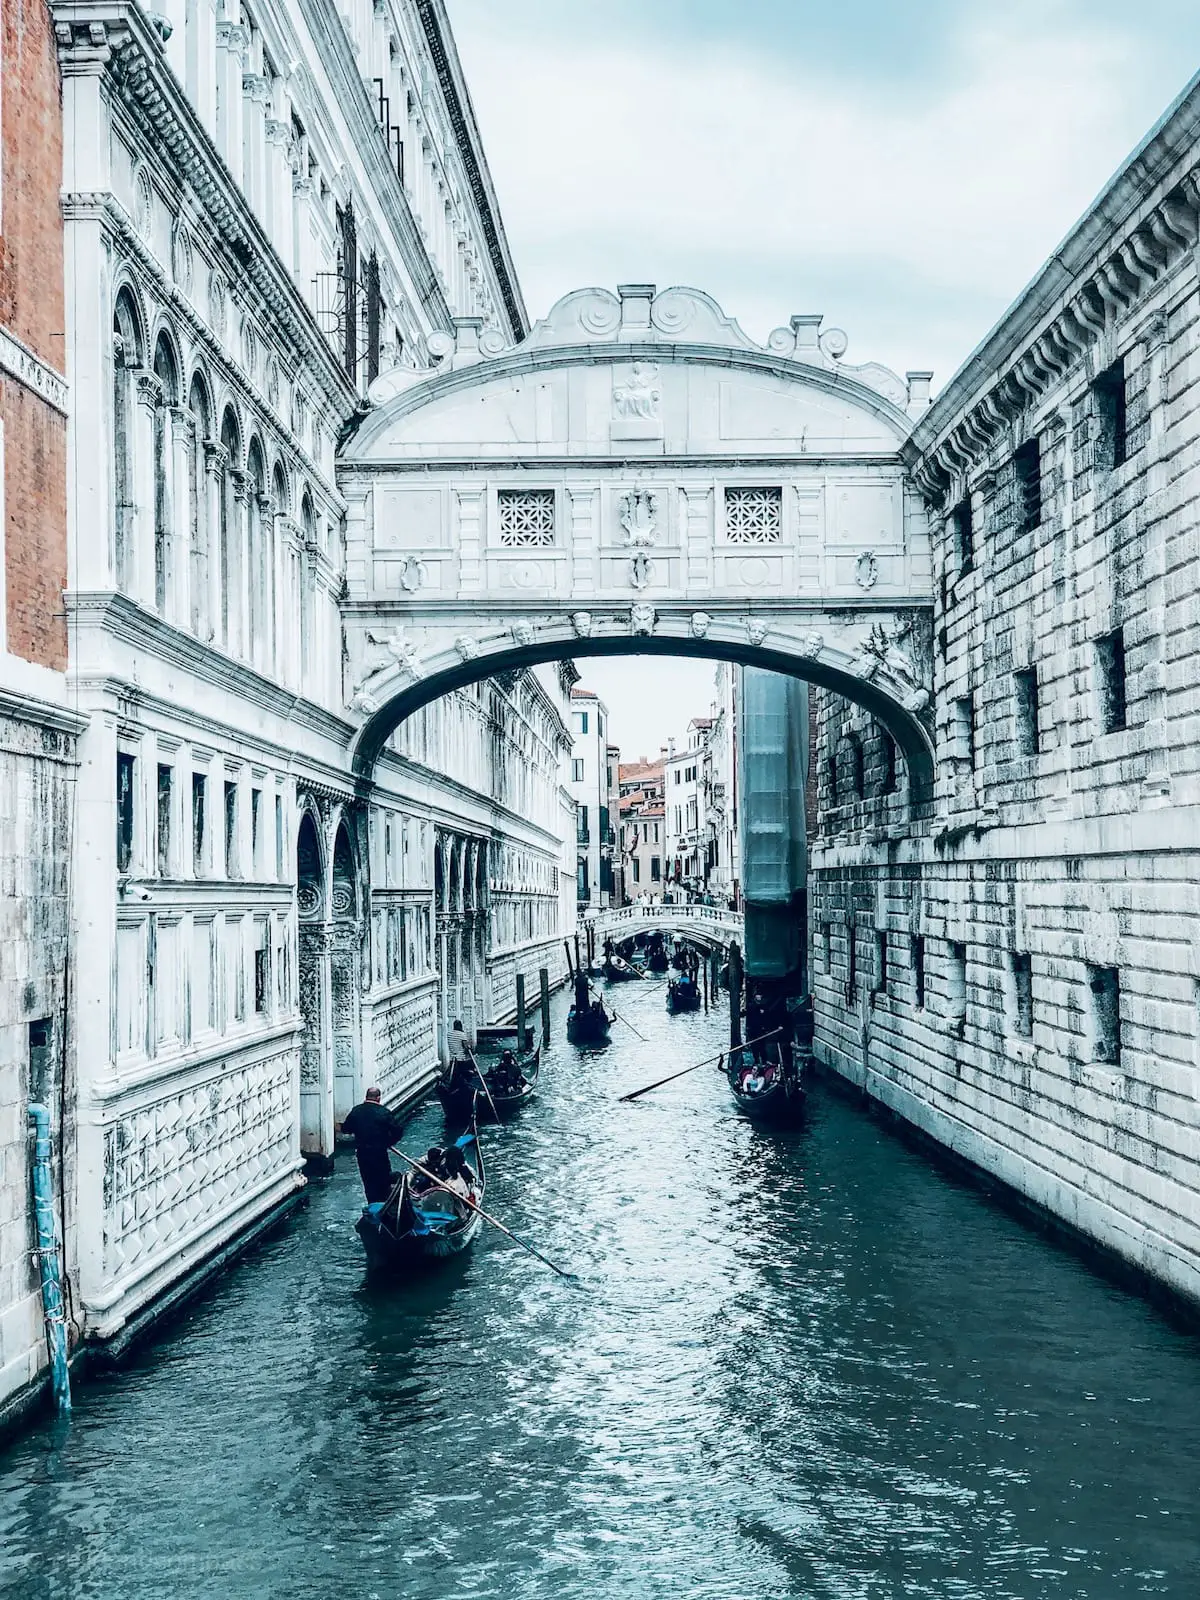 Seufzerbrücke in Venedig, weiße Brücke aus Kalkstein